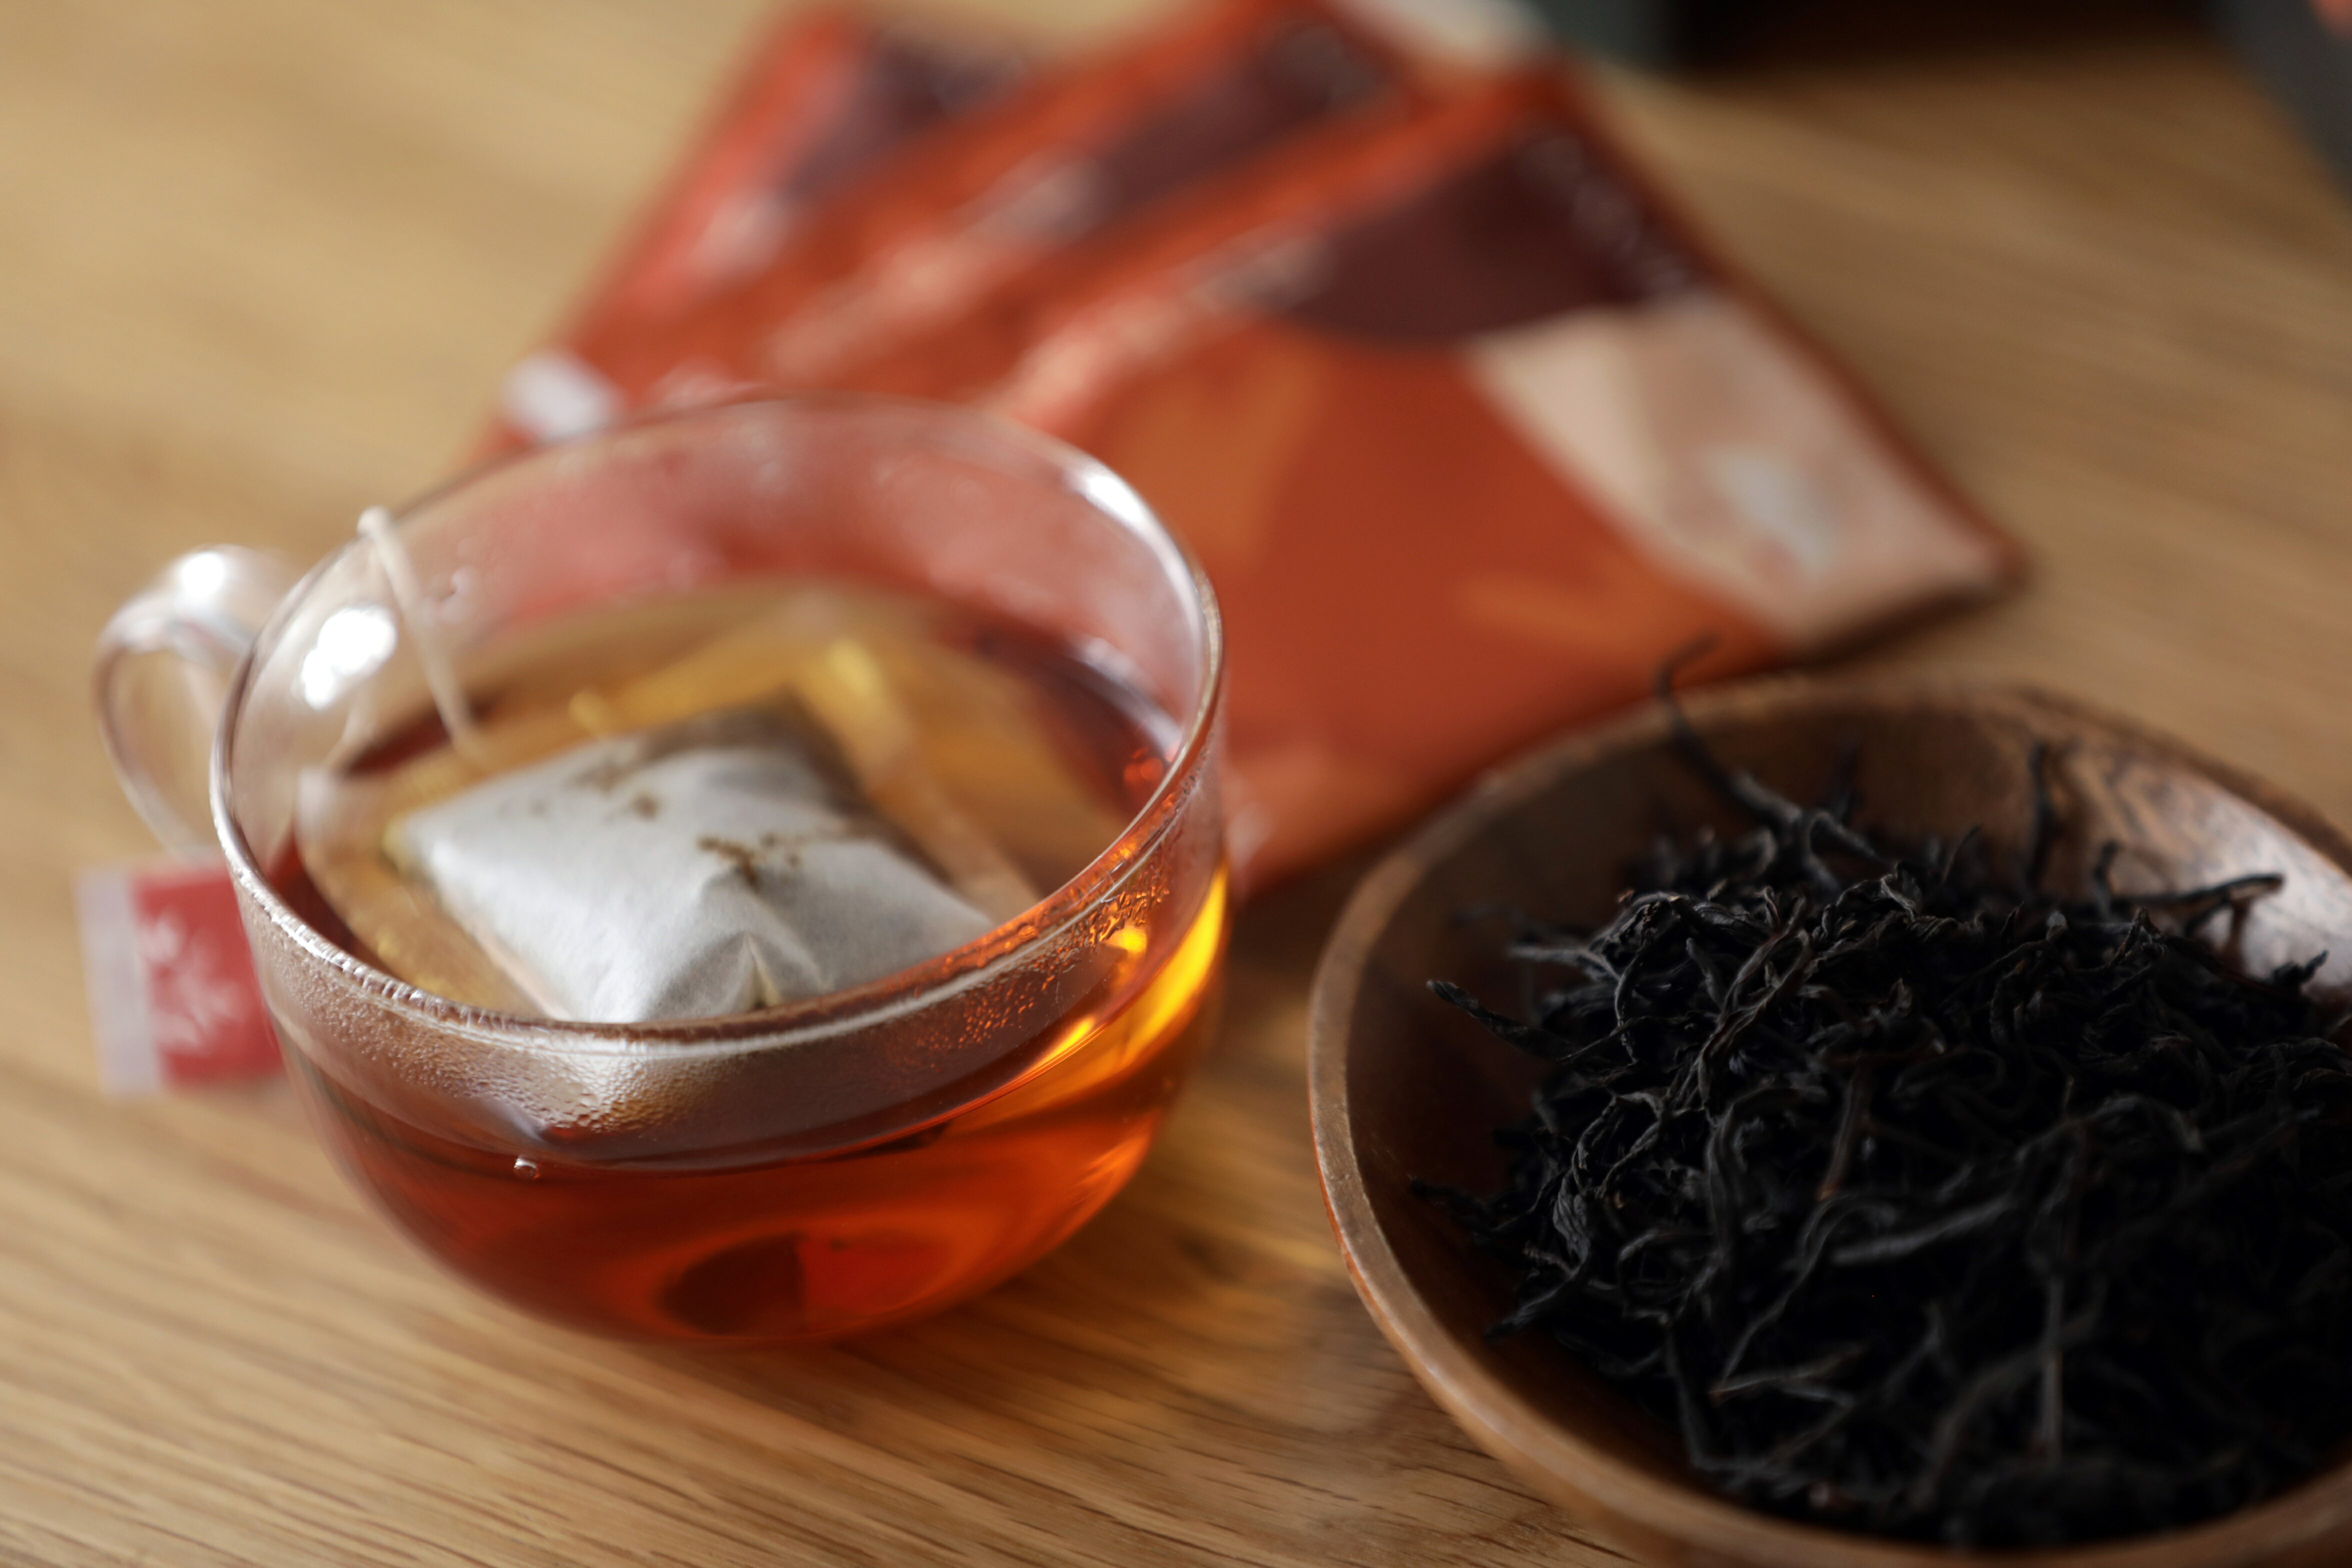 日月潭紅茶/紫芽山茶+白芯紅茶+紅玉紅茶/茶包組合包